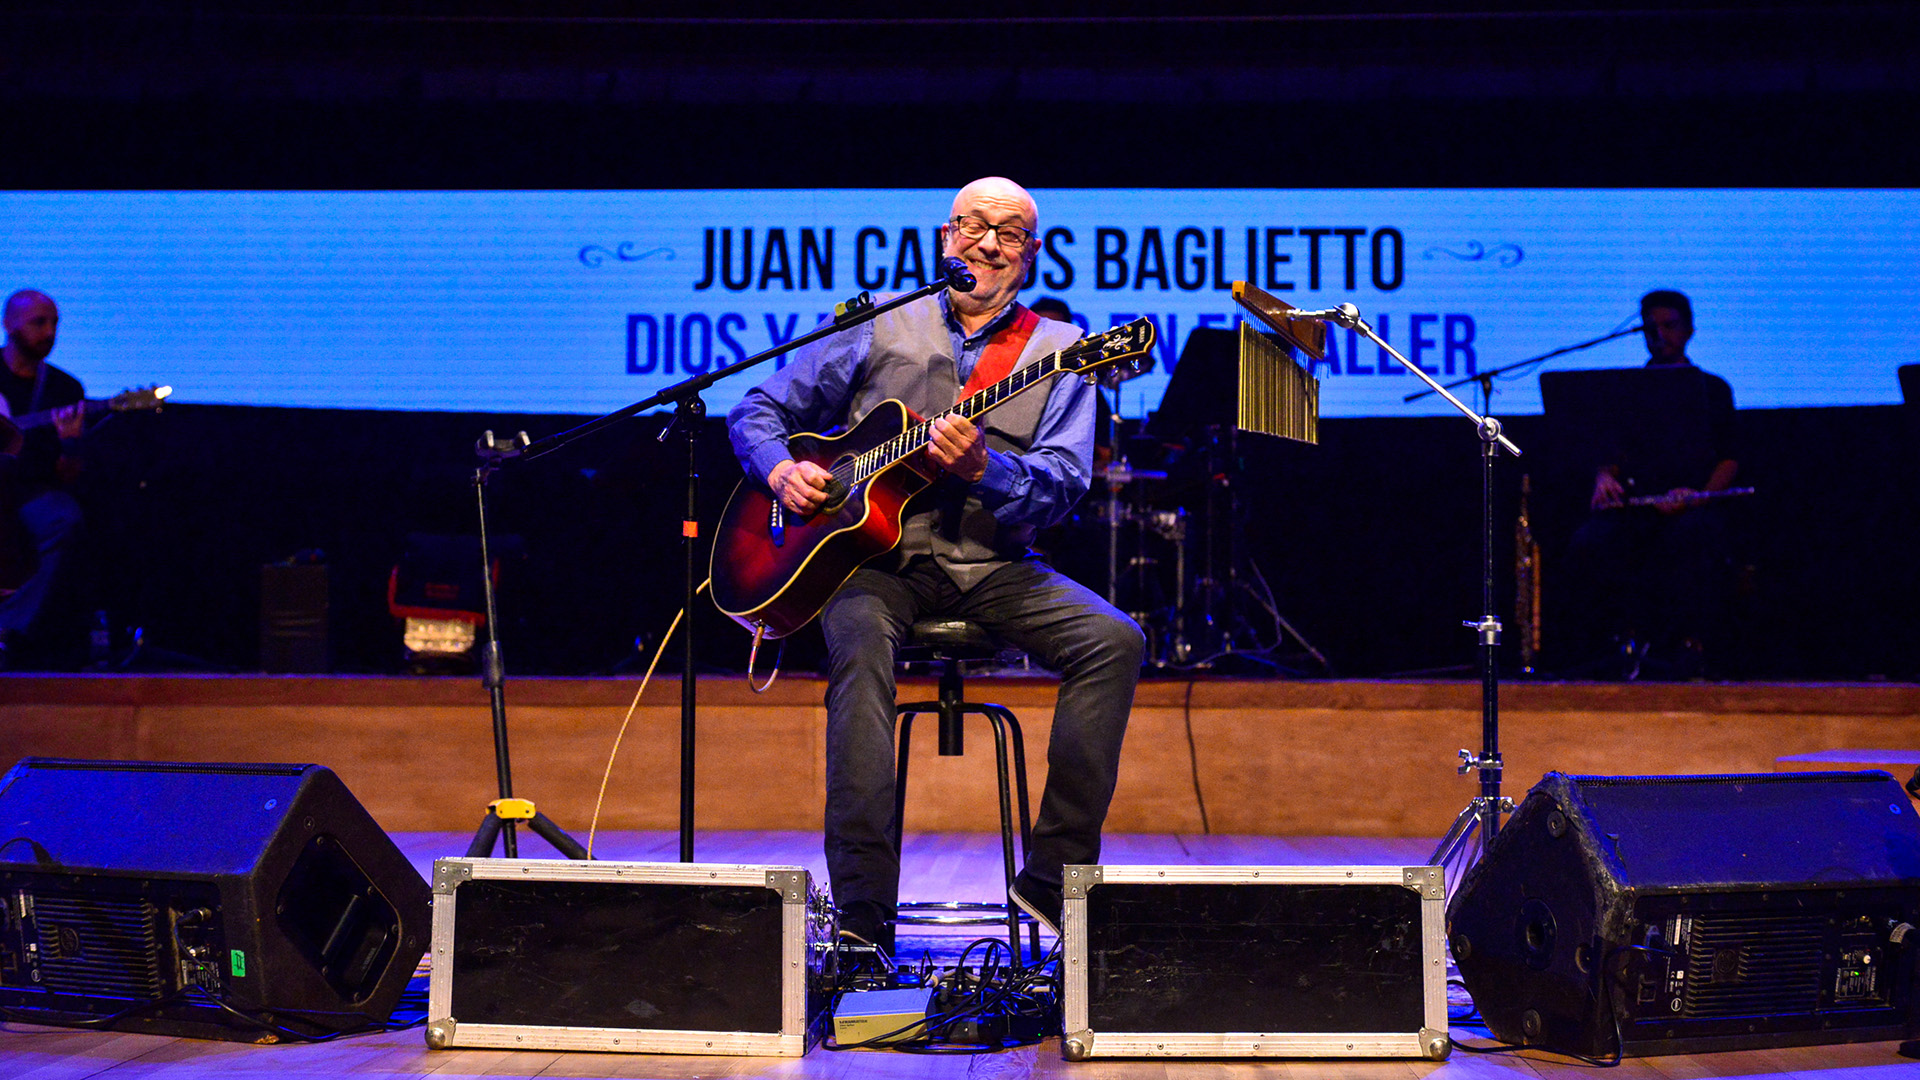 Juan Carlos Baglietto